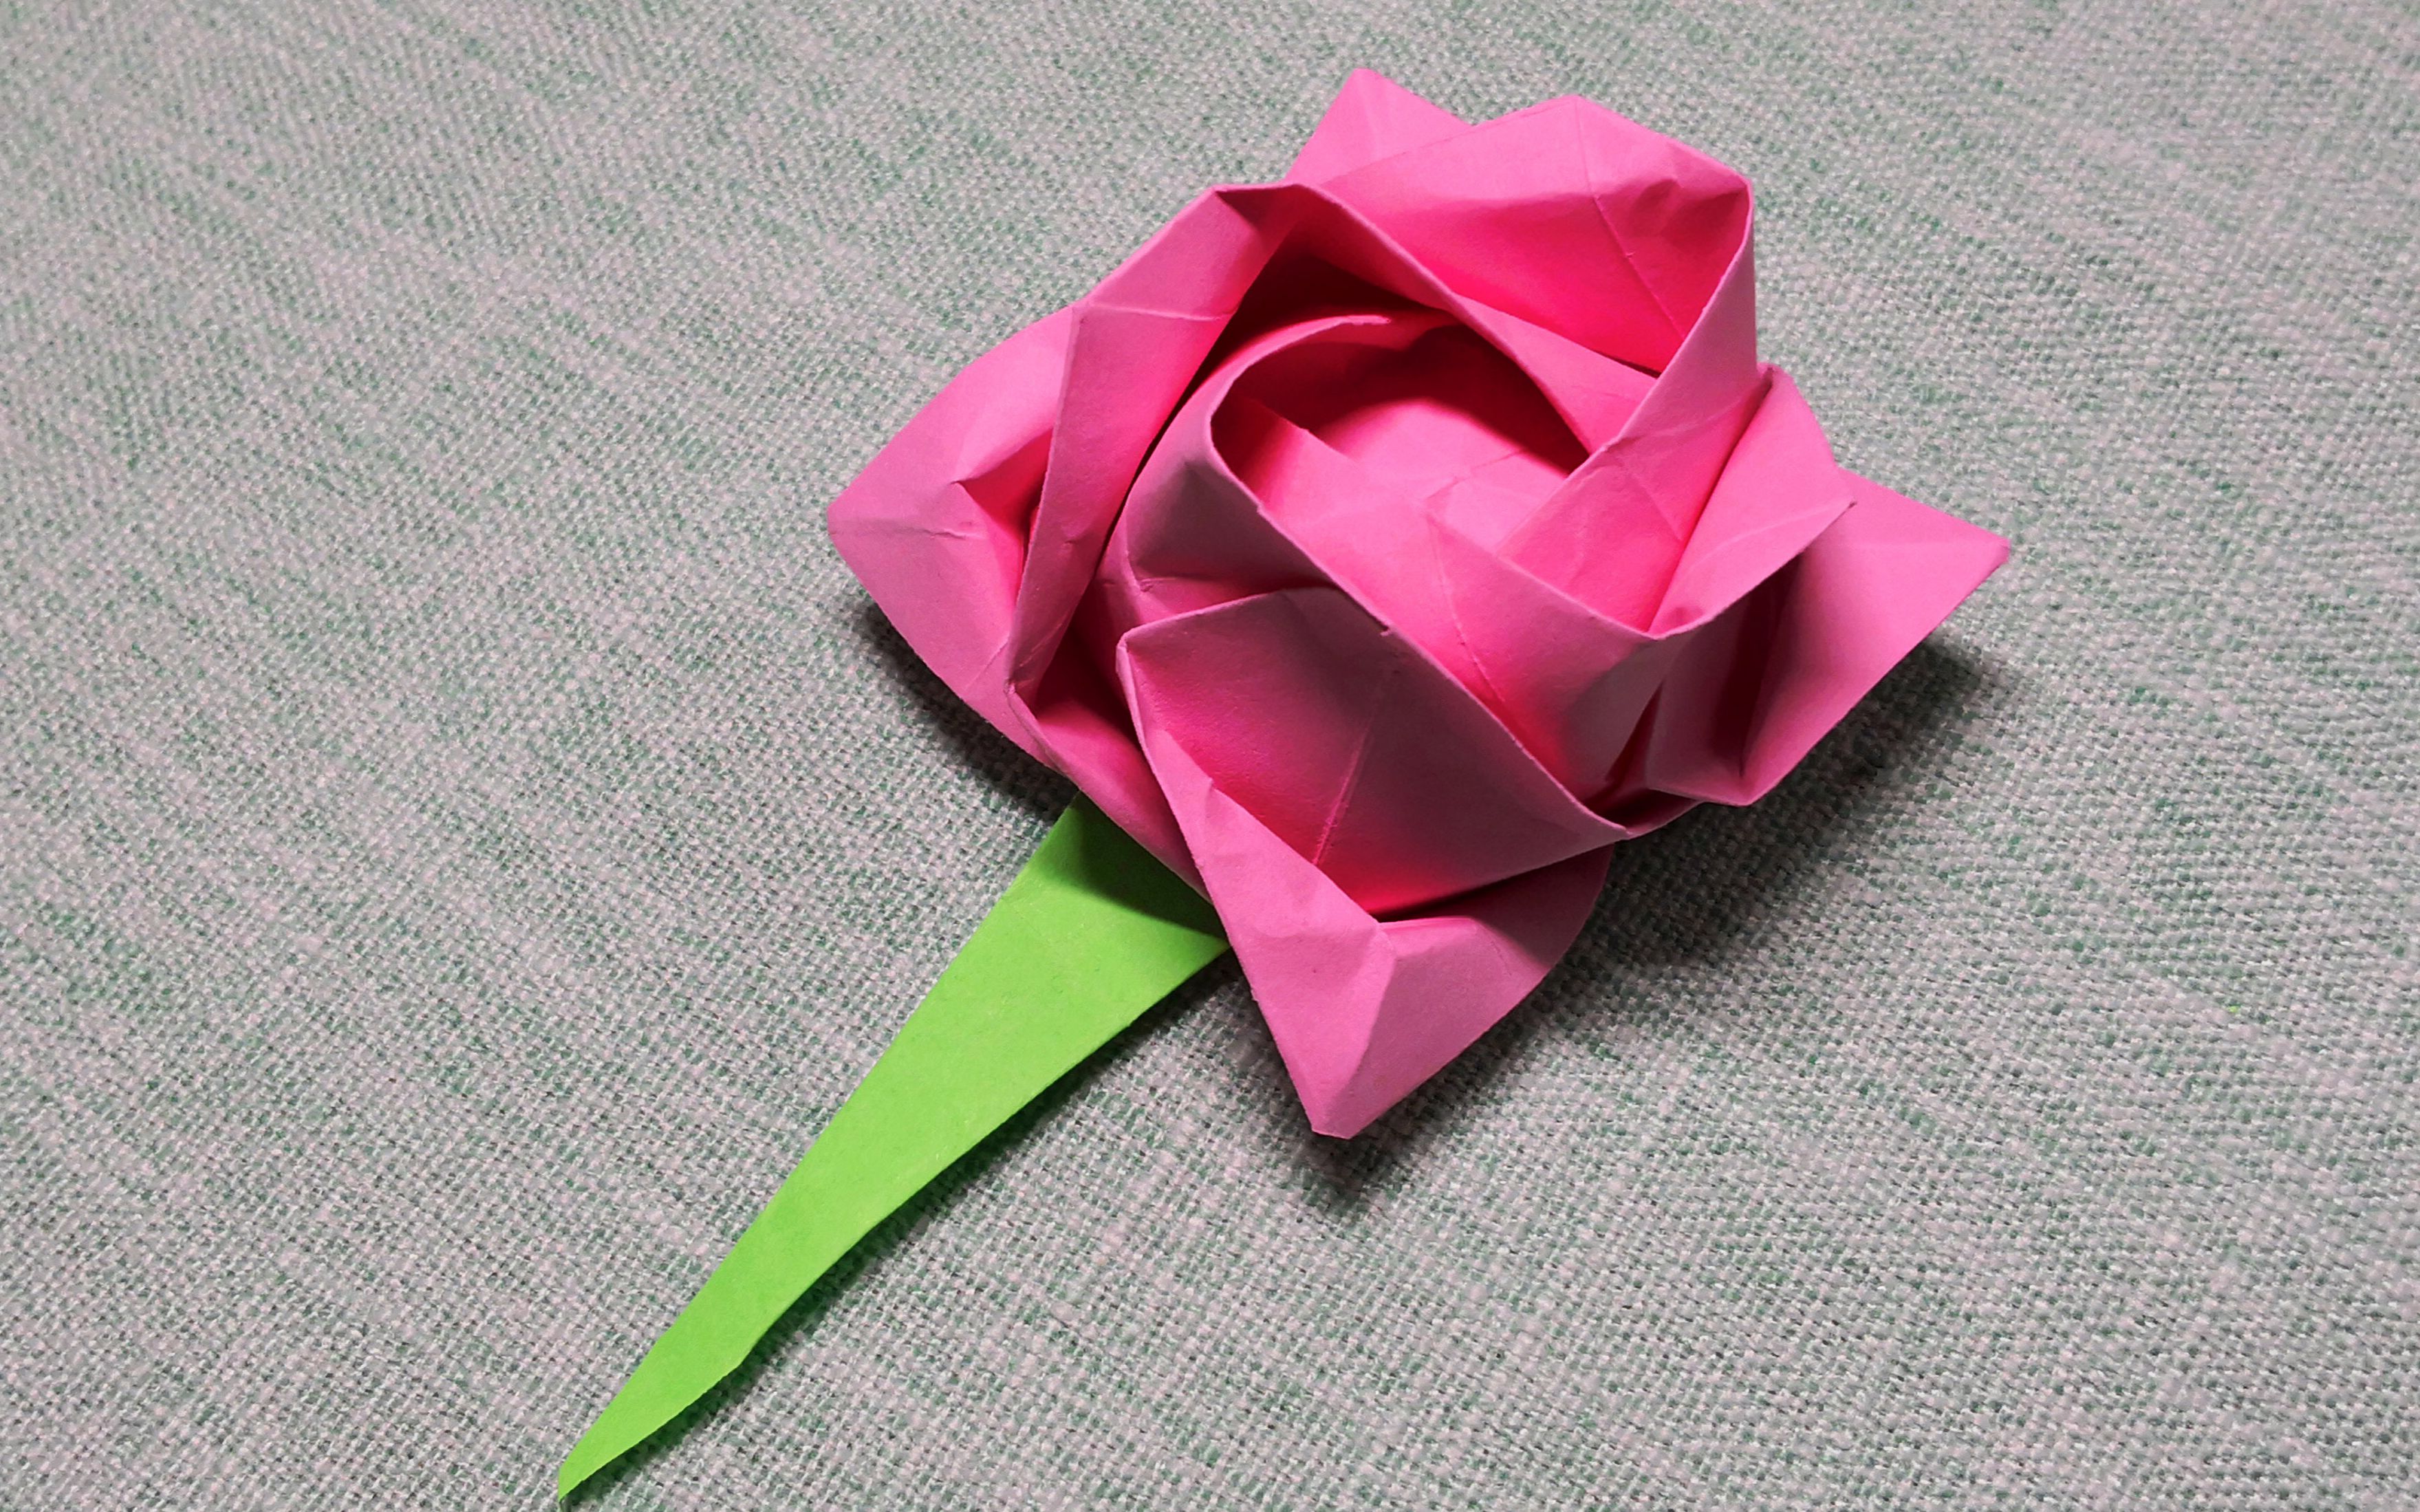 玫瑰花折纸 简单易学图片